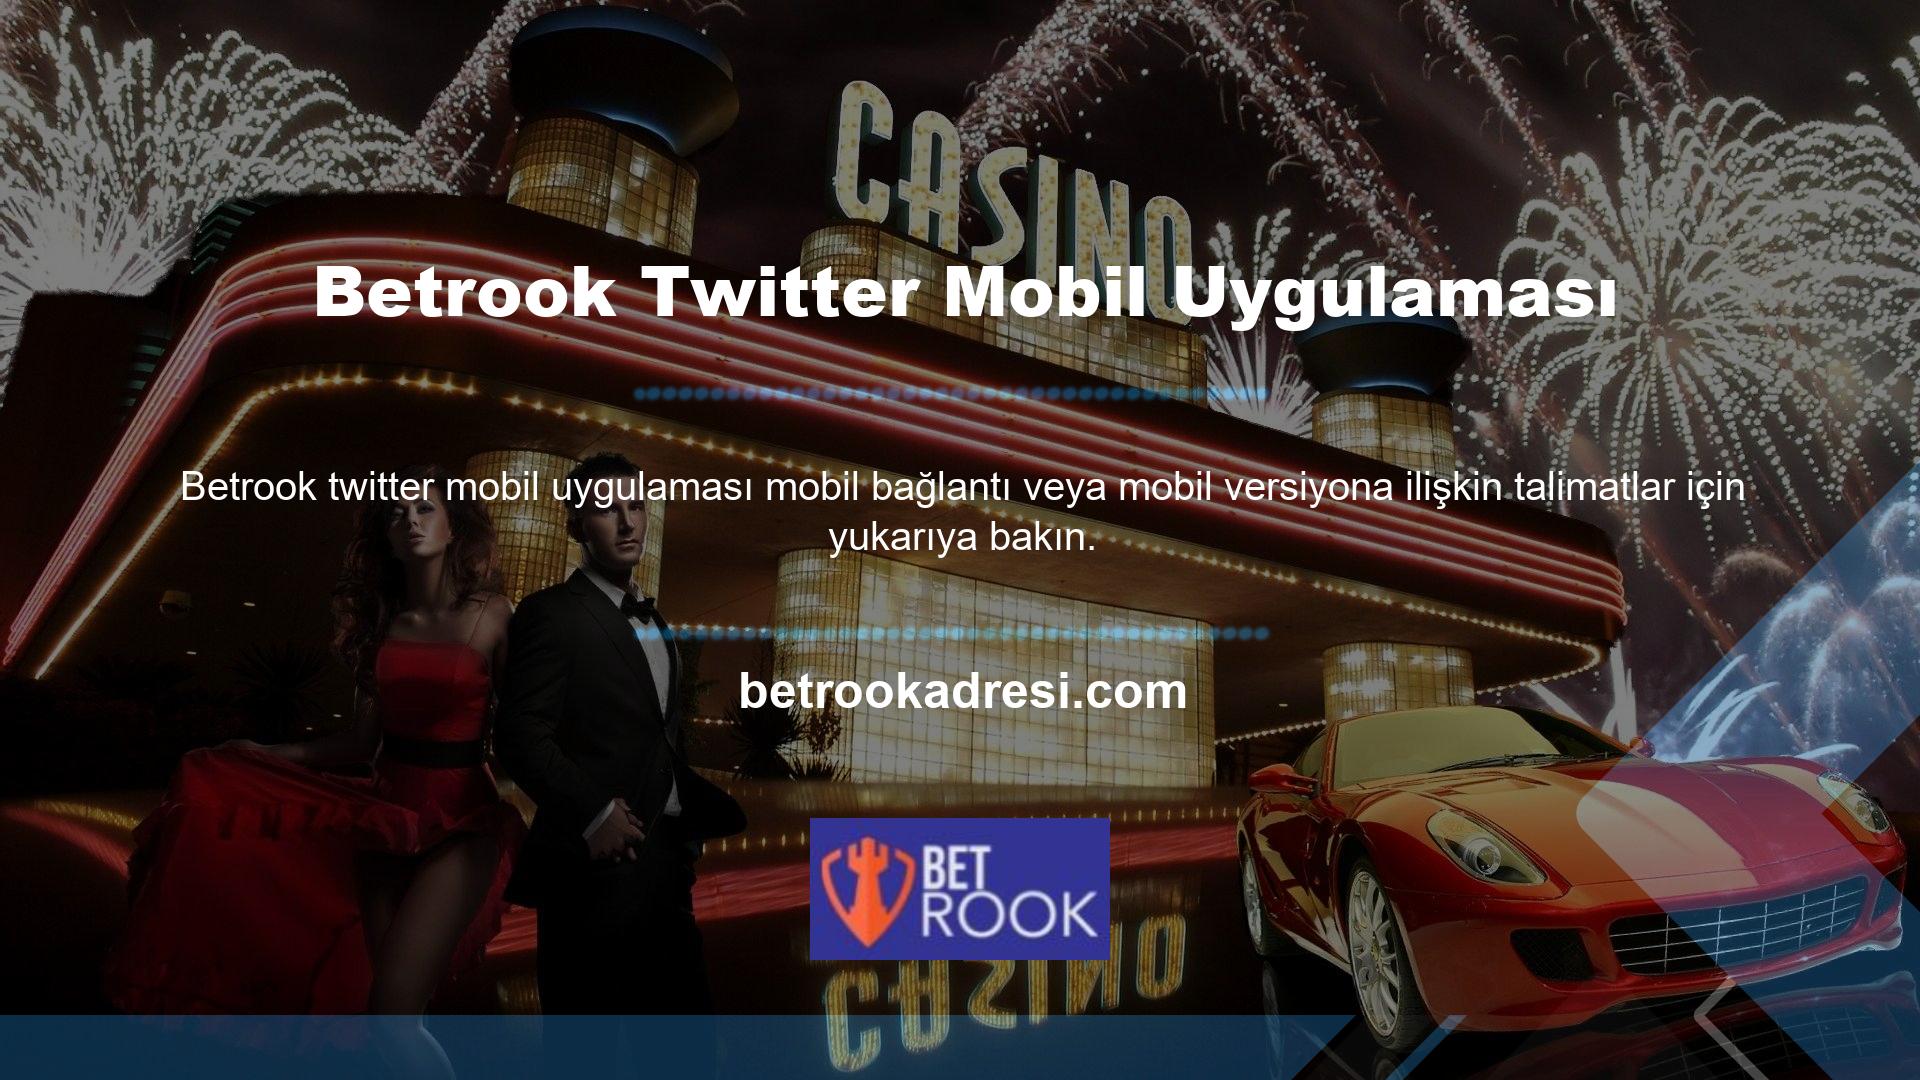 Size yardımcı olabilecek bir diğer seçenek ise Betrook Twitter mobil uygulamasıdır